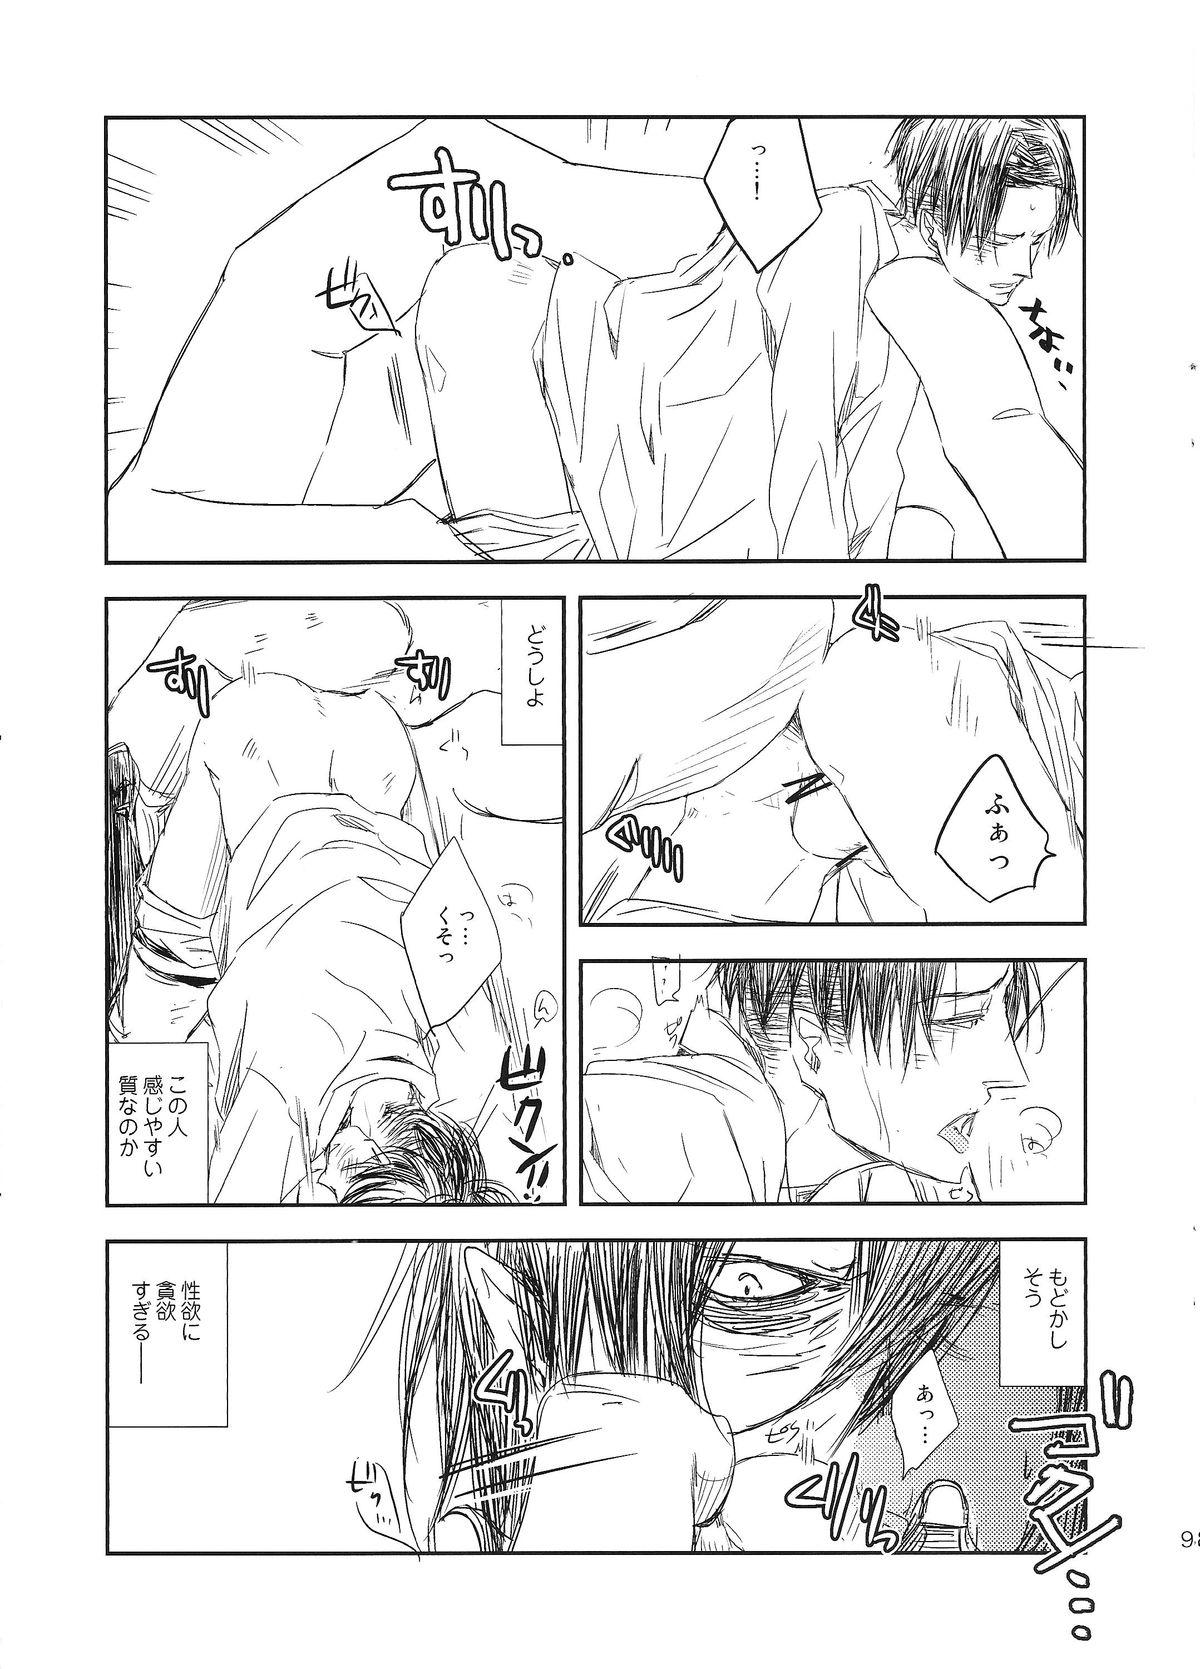 Adult Kyojin to! - Shingeki no kyojin Flash - Page 9